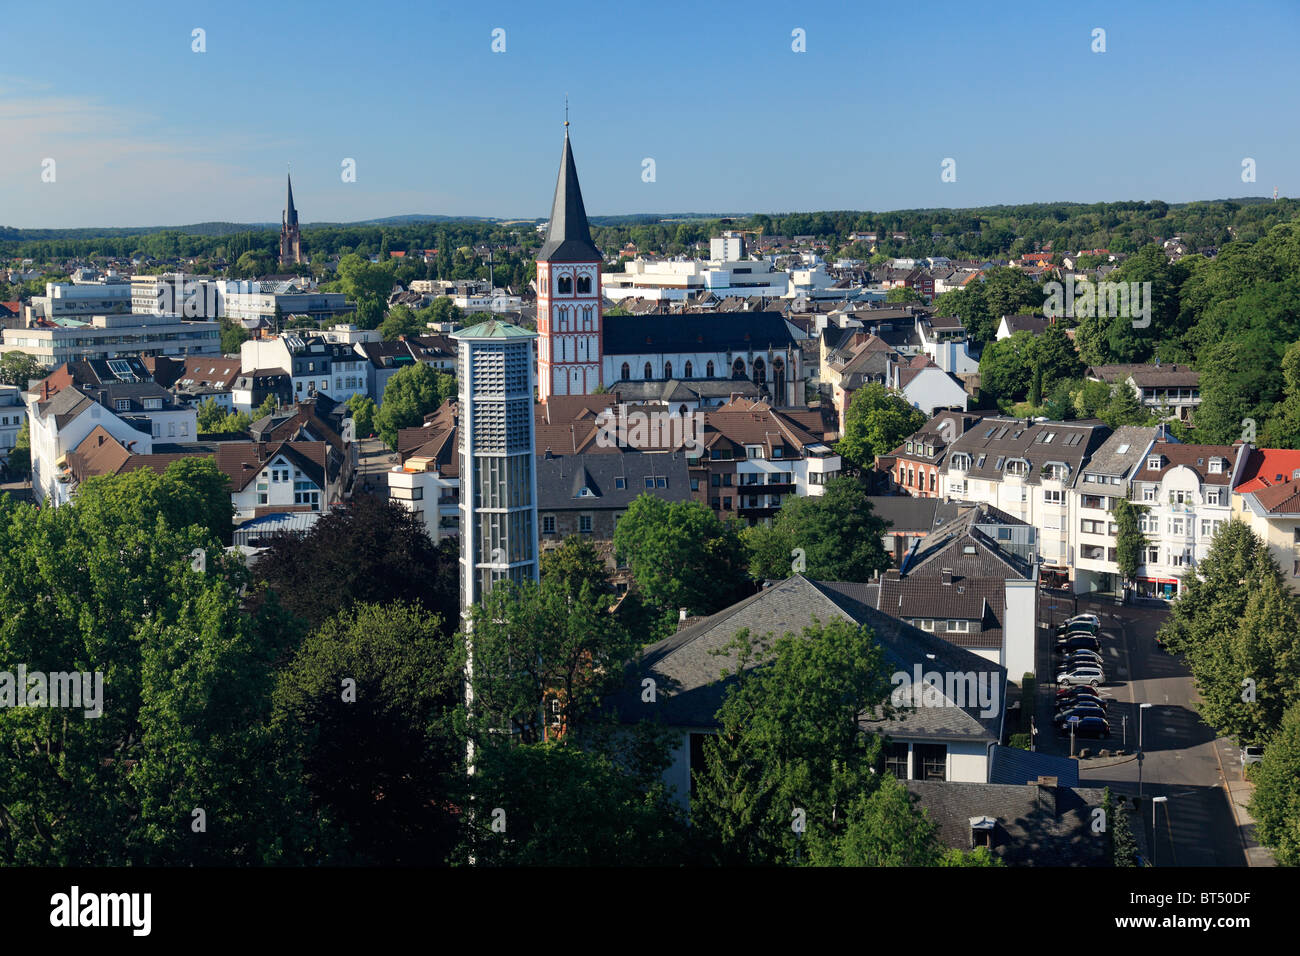 Stadtpanorama von Siegburg in Nordrhein-Westfalen mit St. Anno-Kirche, Auferstehungskirche und Pfarrkirche St. Servatius Stock Photo